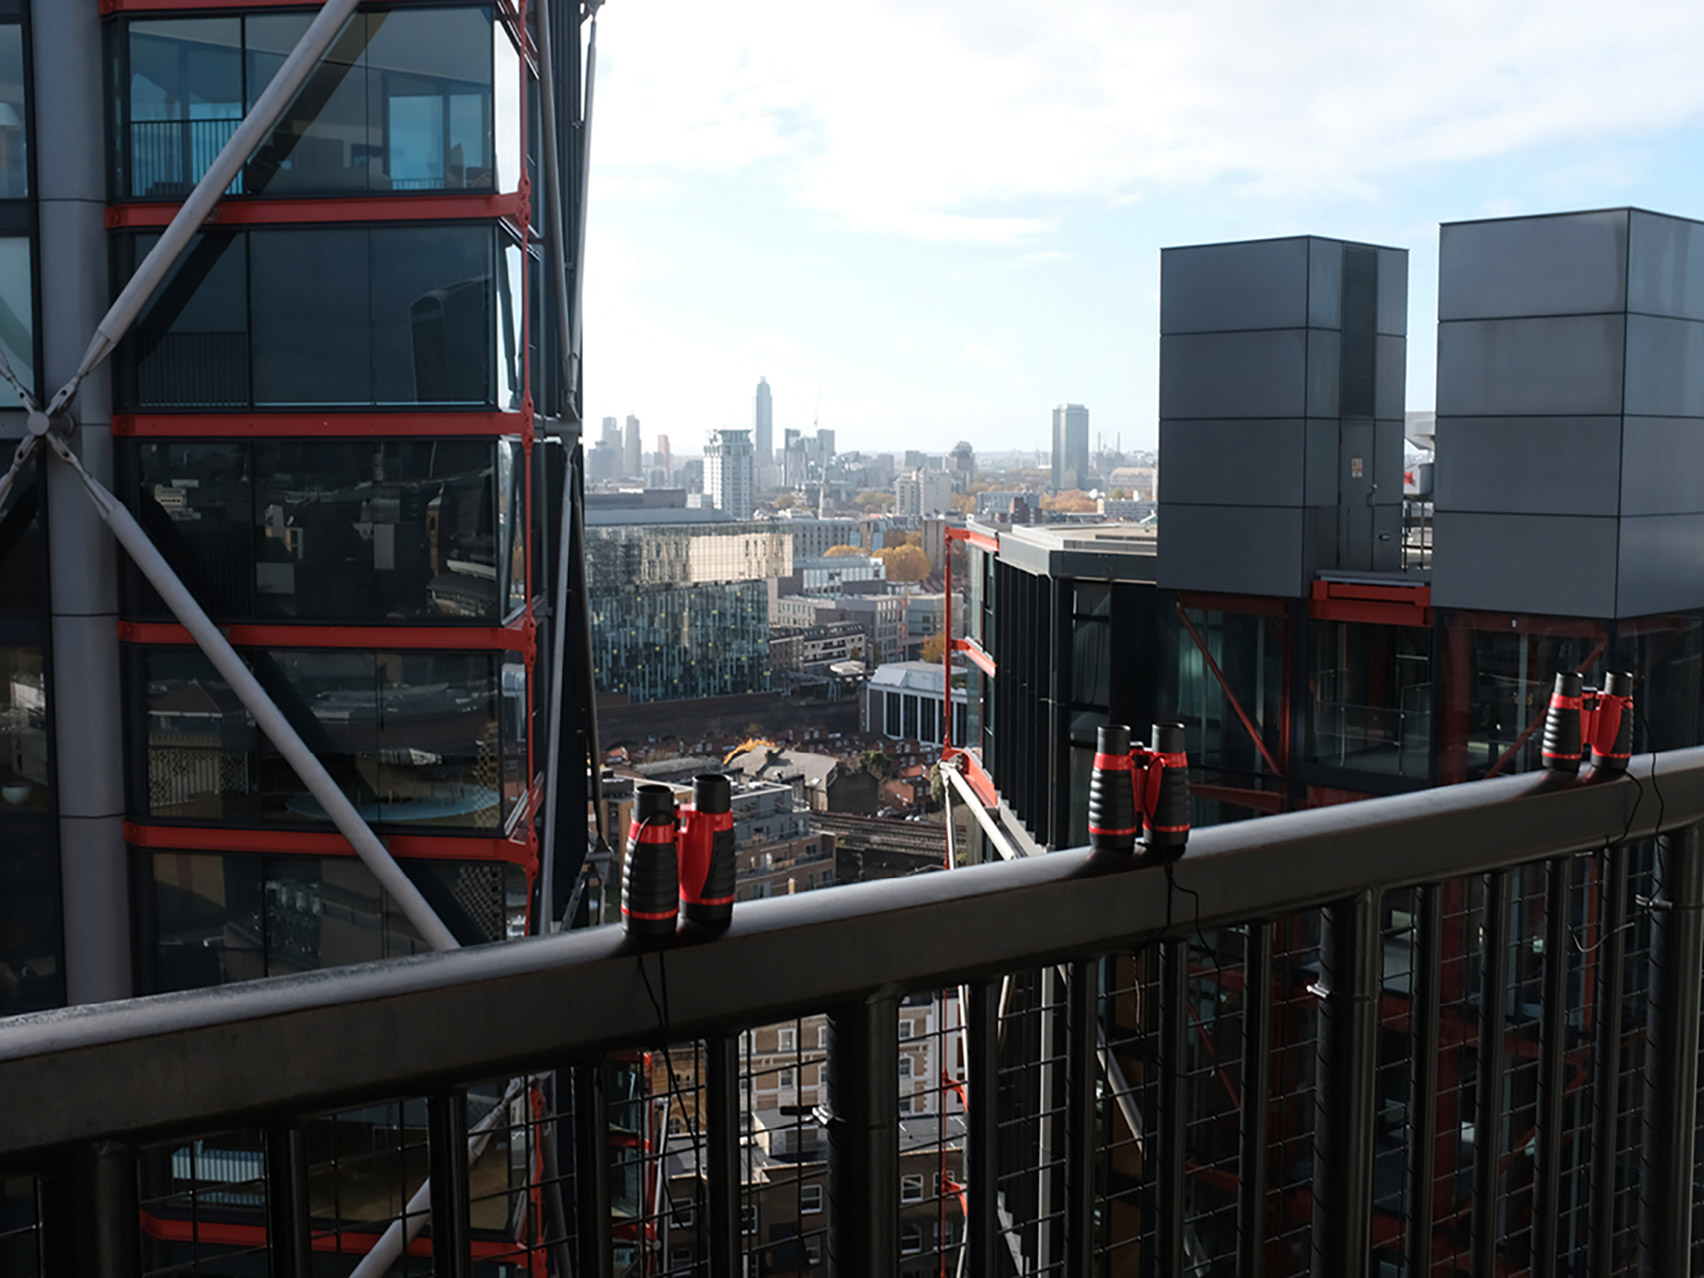 Artist's binoculars let Tate Modern visitors look inside RSH+P's Neo Bankside